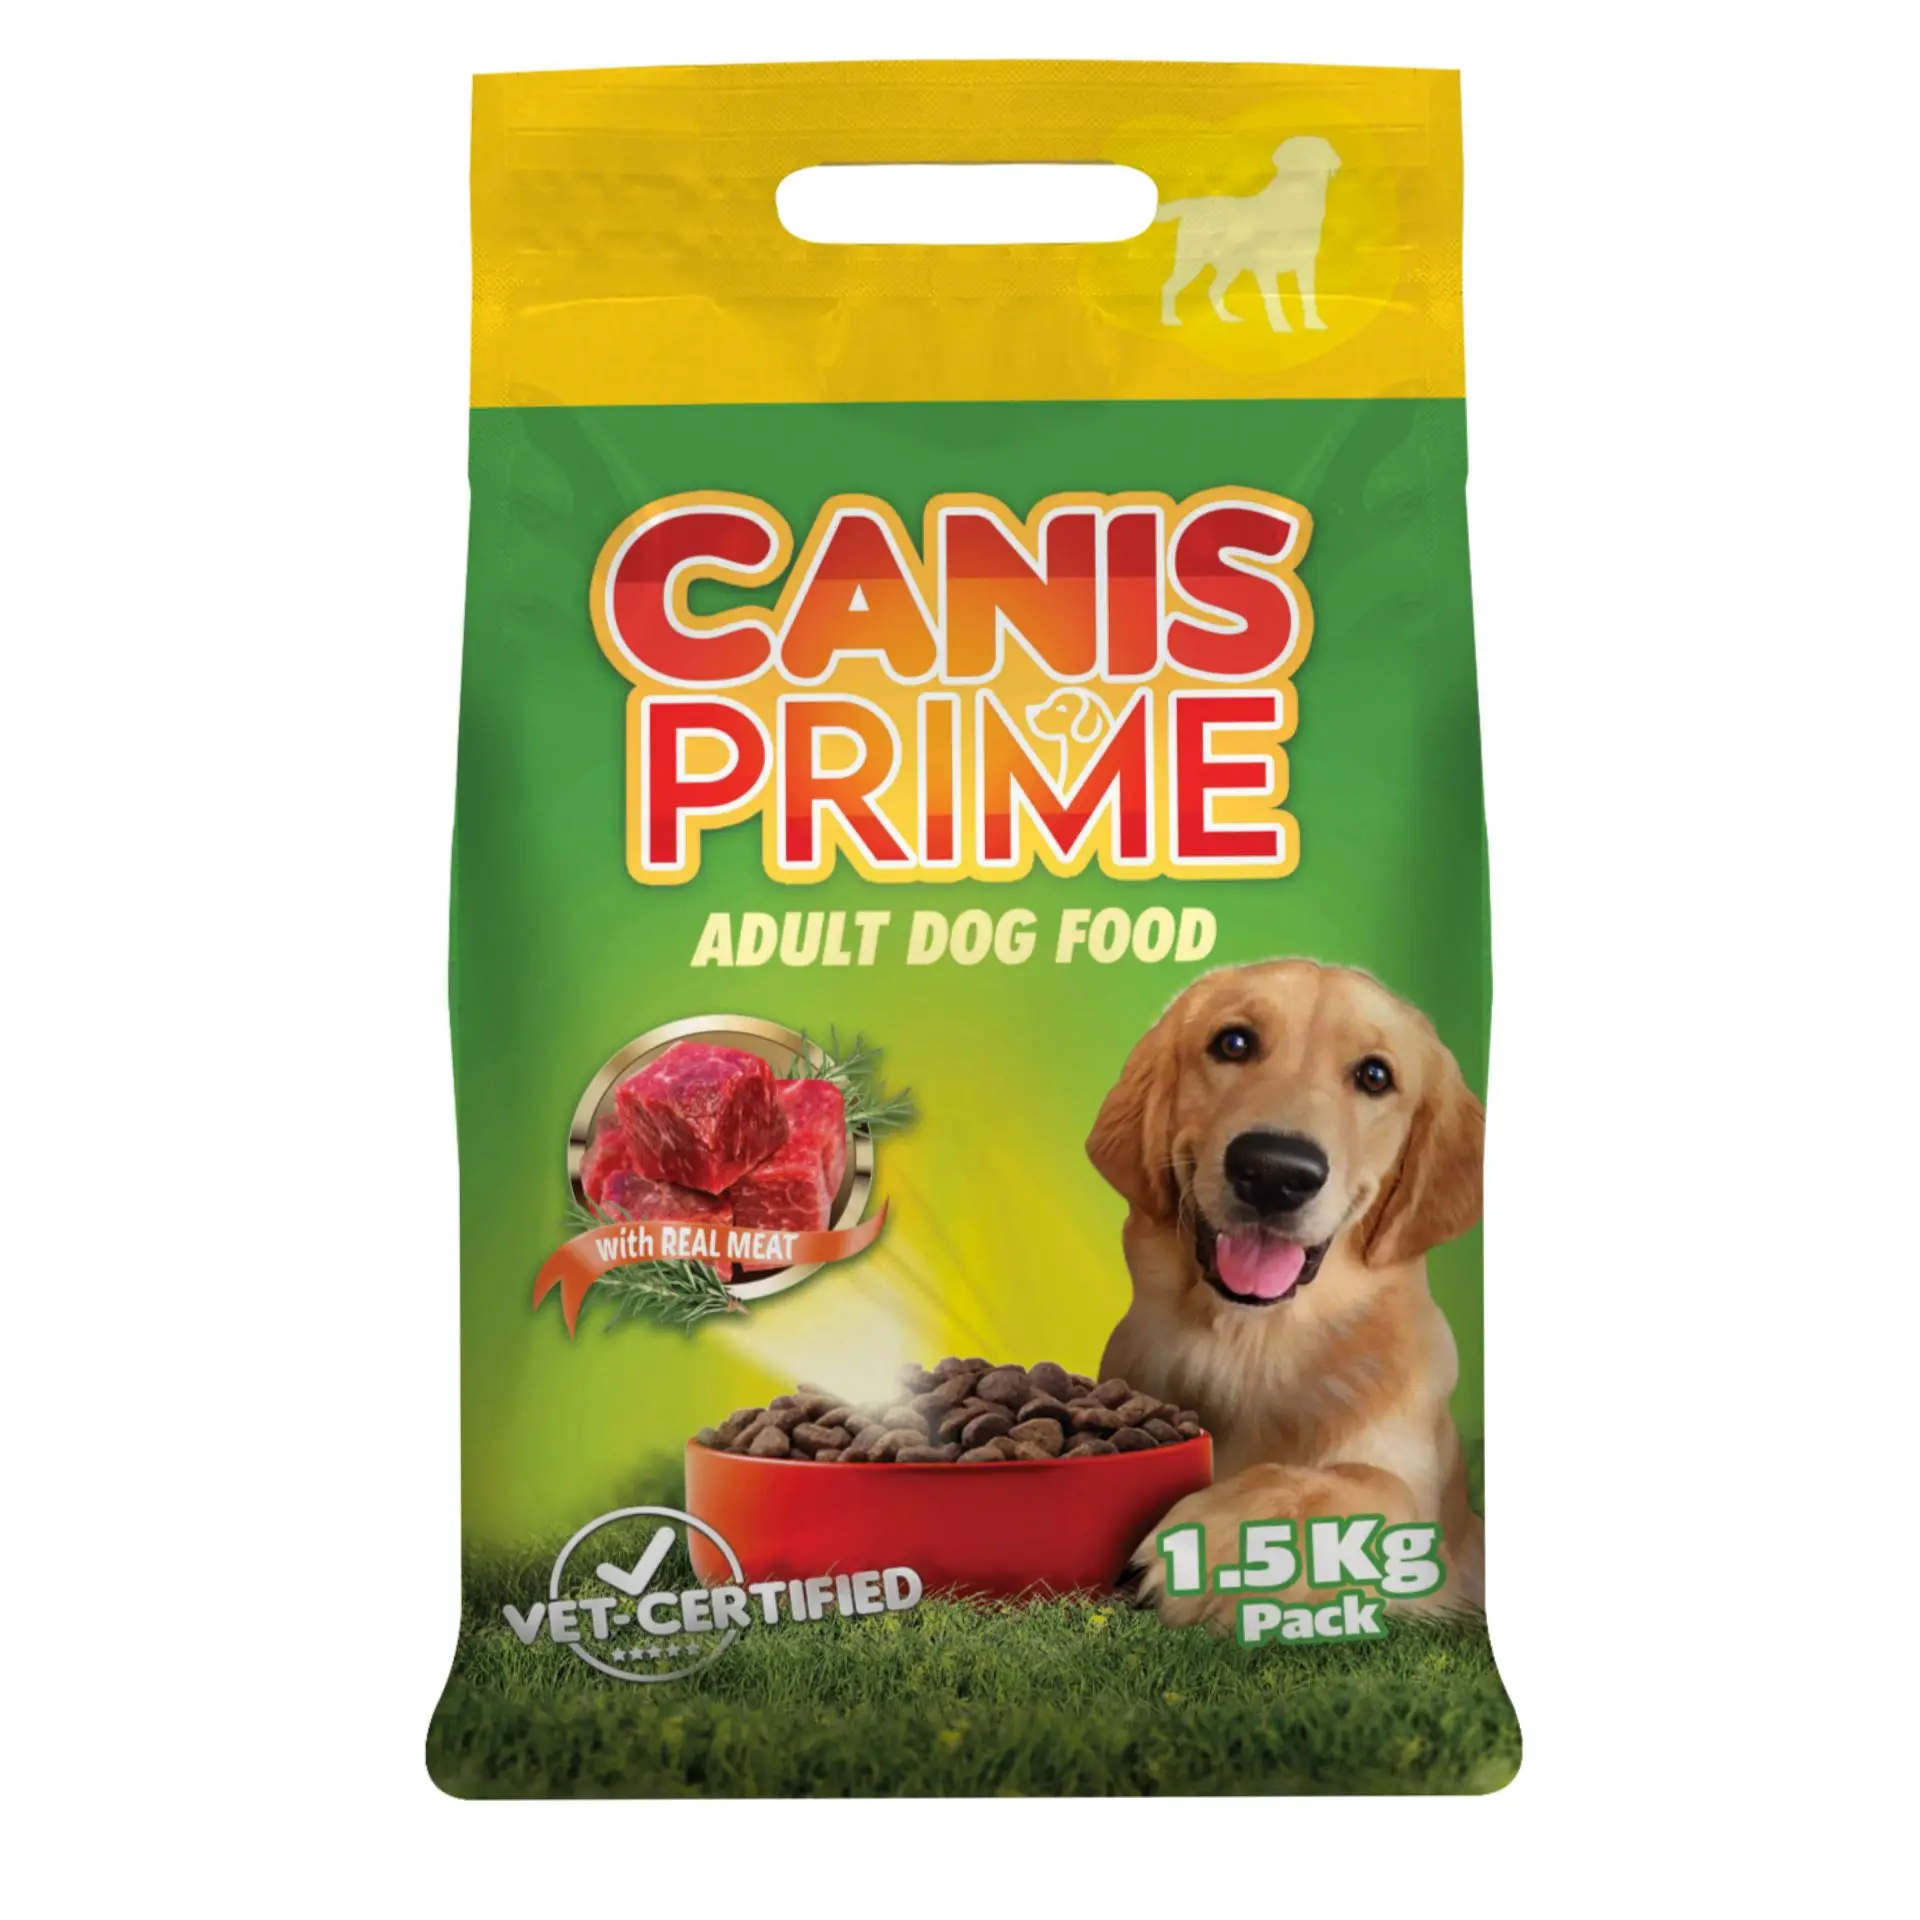 Canis Prime Adult Dog Food 1.5 kg